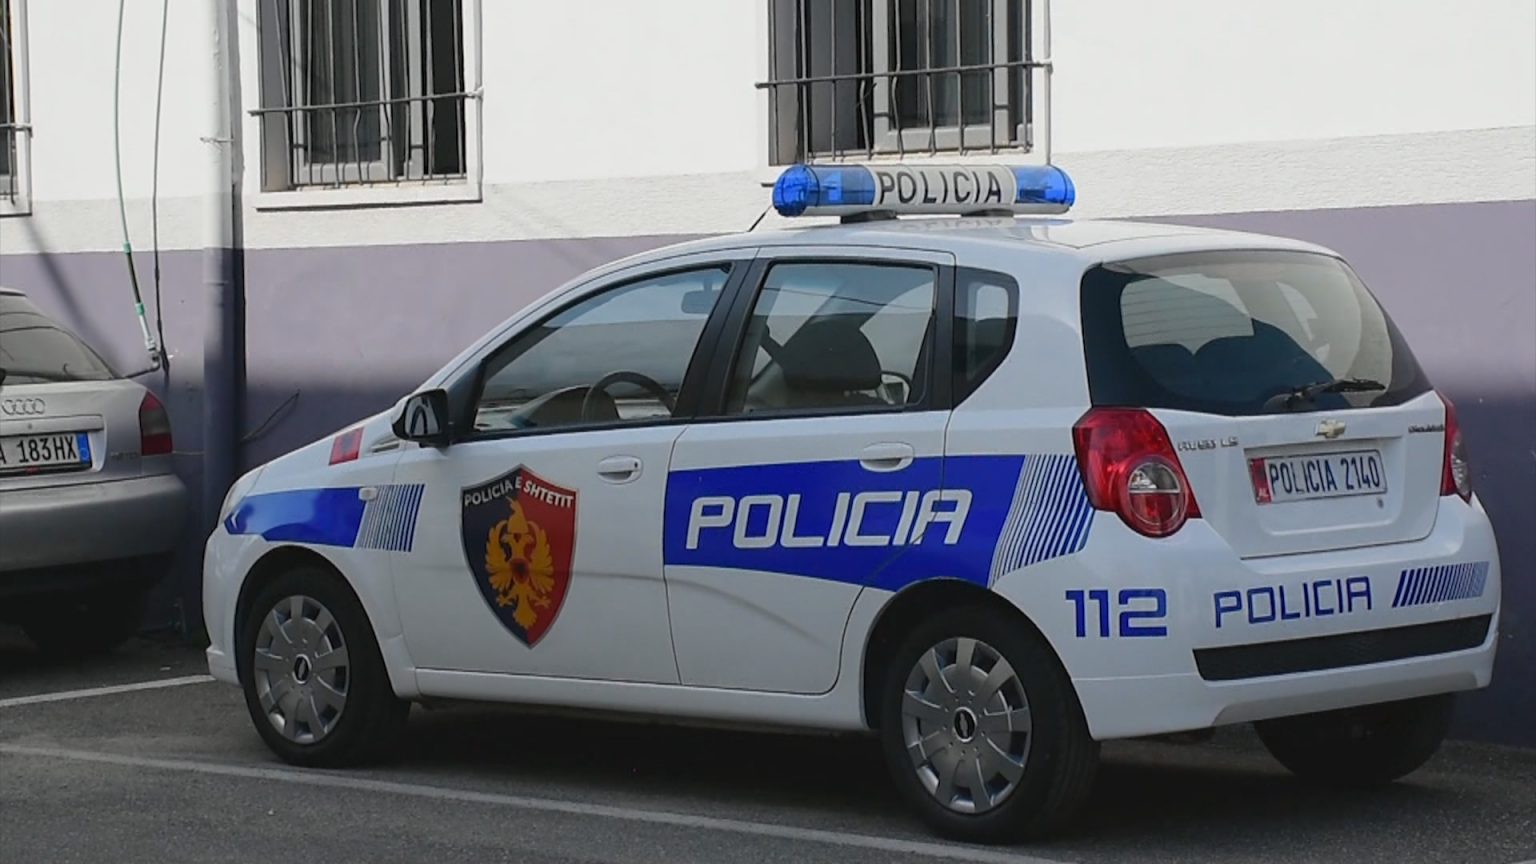 ÇFARË NDODHI? Kanabis, grabitje dhe drejtim mjeti në gjendje të dehur, arrestohen 5 persona në Tiranë